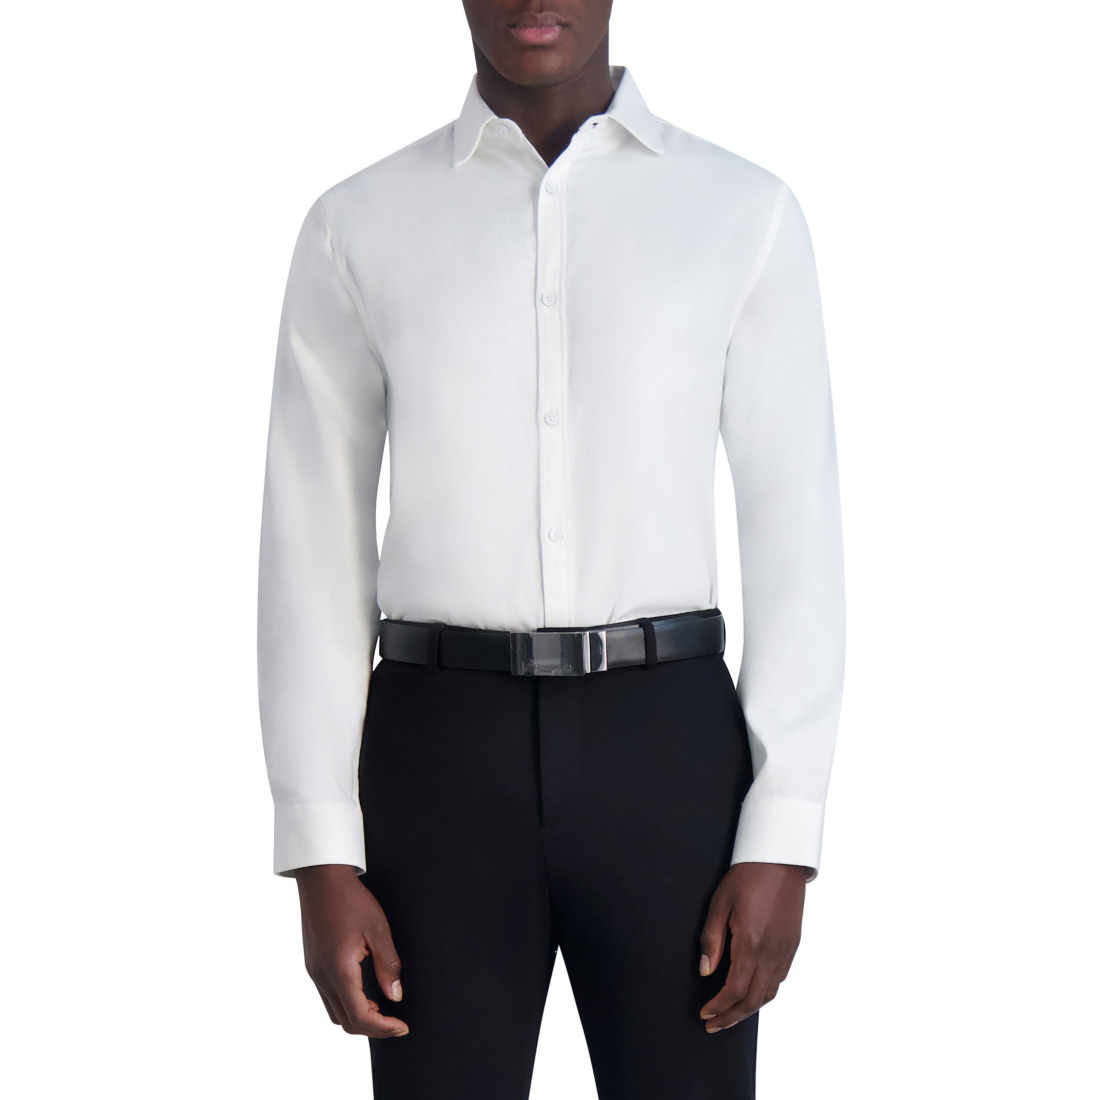 Men's 'Textured Twill Dress' Short sleeve shirt